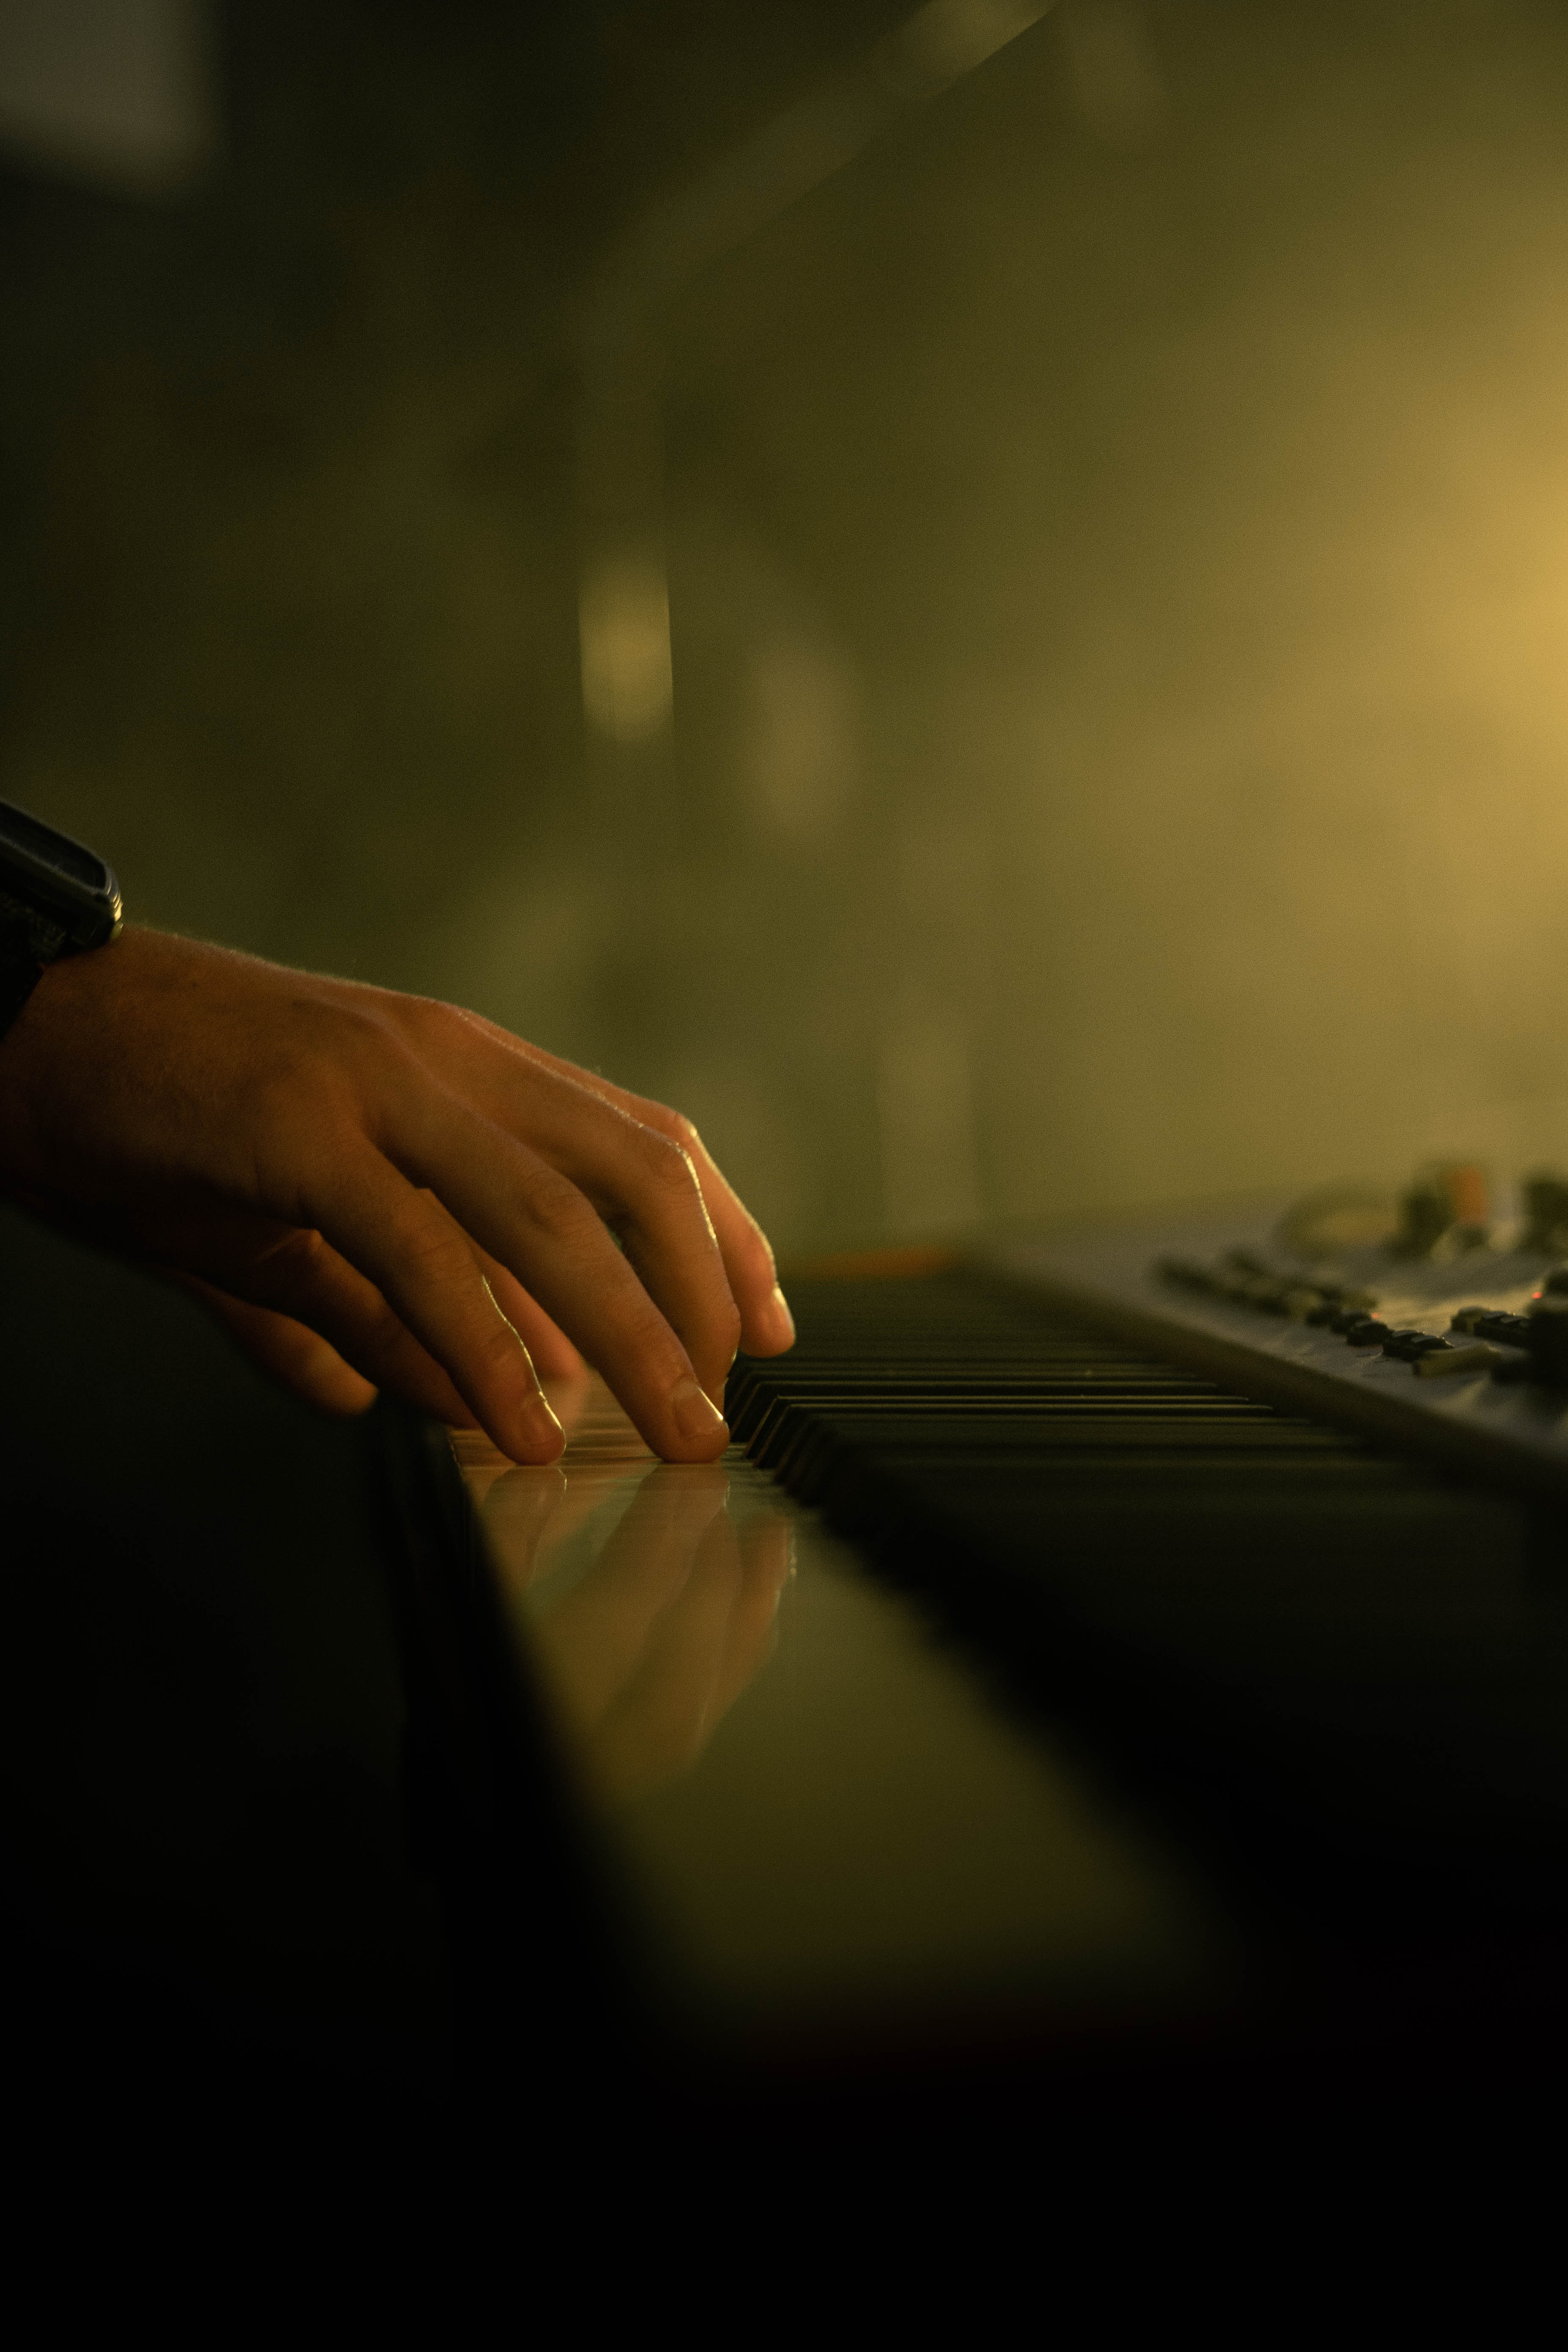 piano, keys, clock, fingers, music